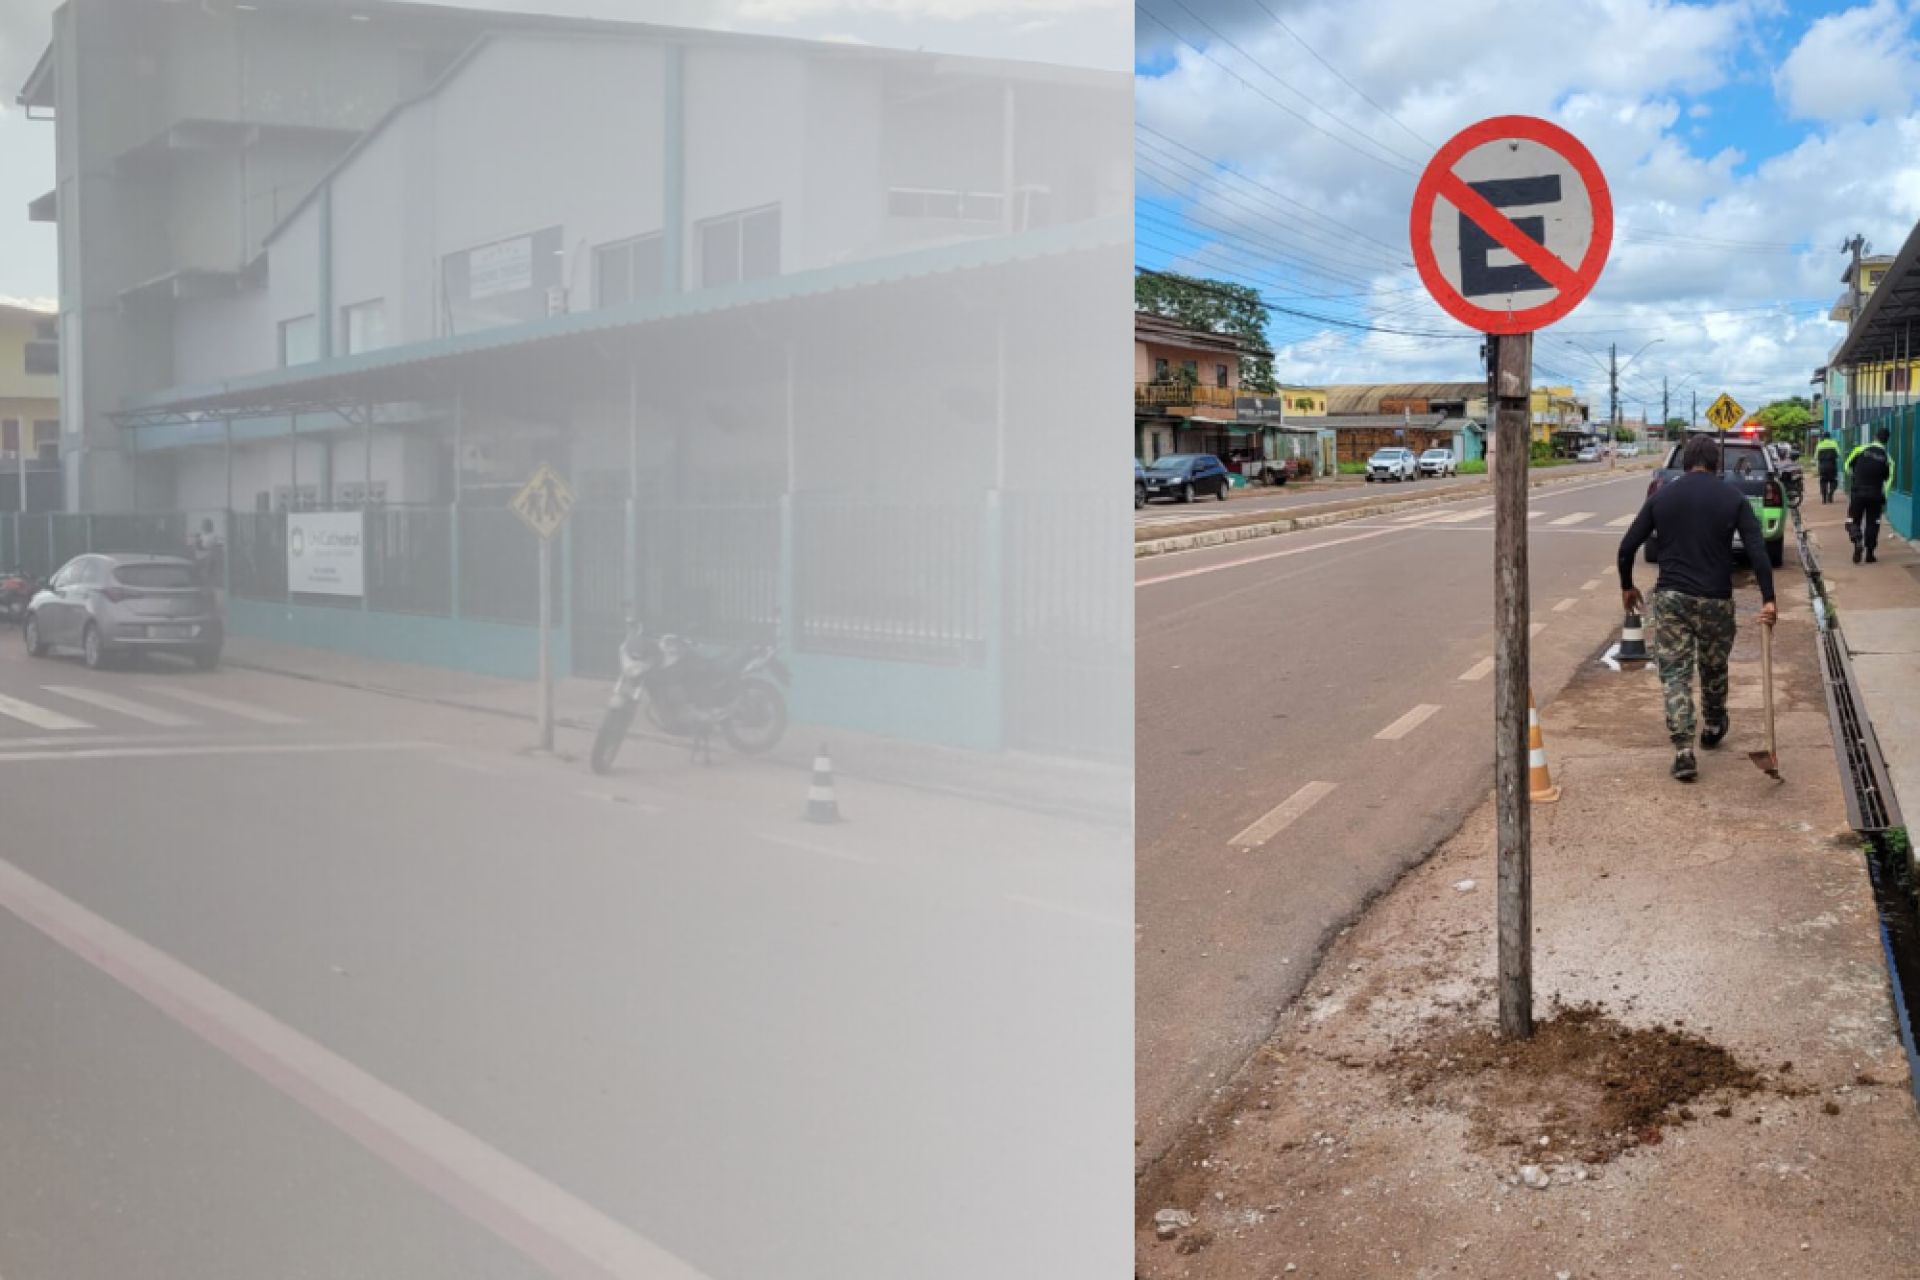 STTRANS realiza alterações na sinalização para melhorar trânsito na Rua Ubaldo Figueira